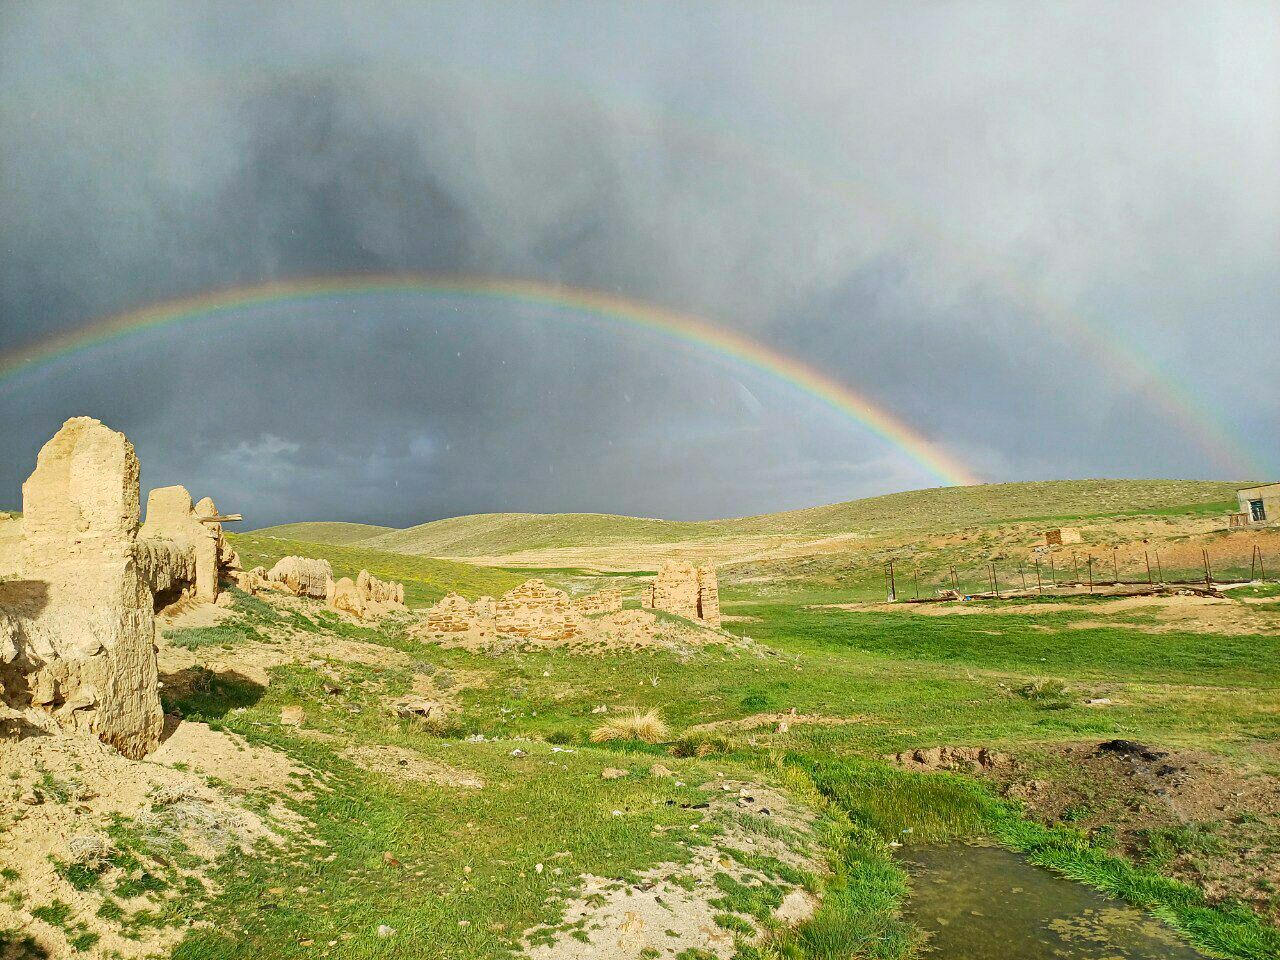 تصویر: رنگین کمان در روستای پیریجان ، شهرستان ازنا